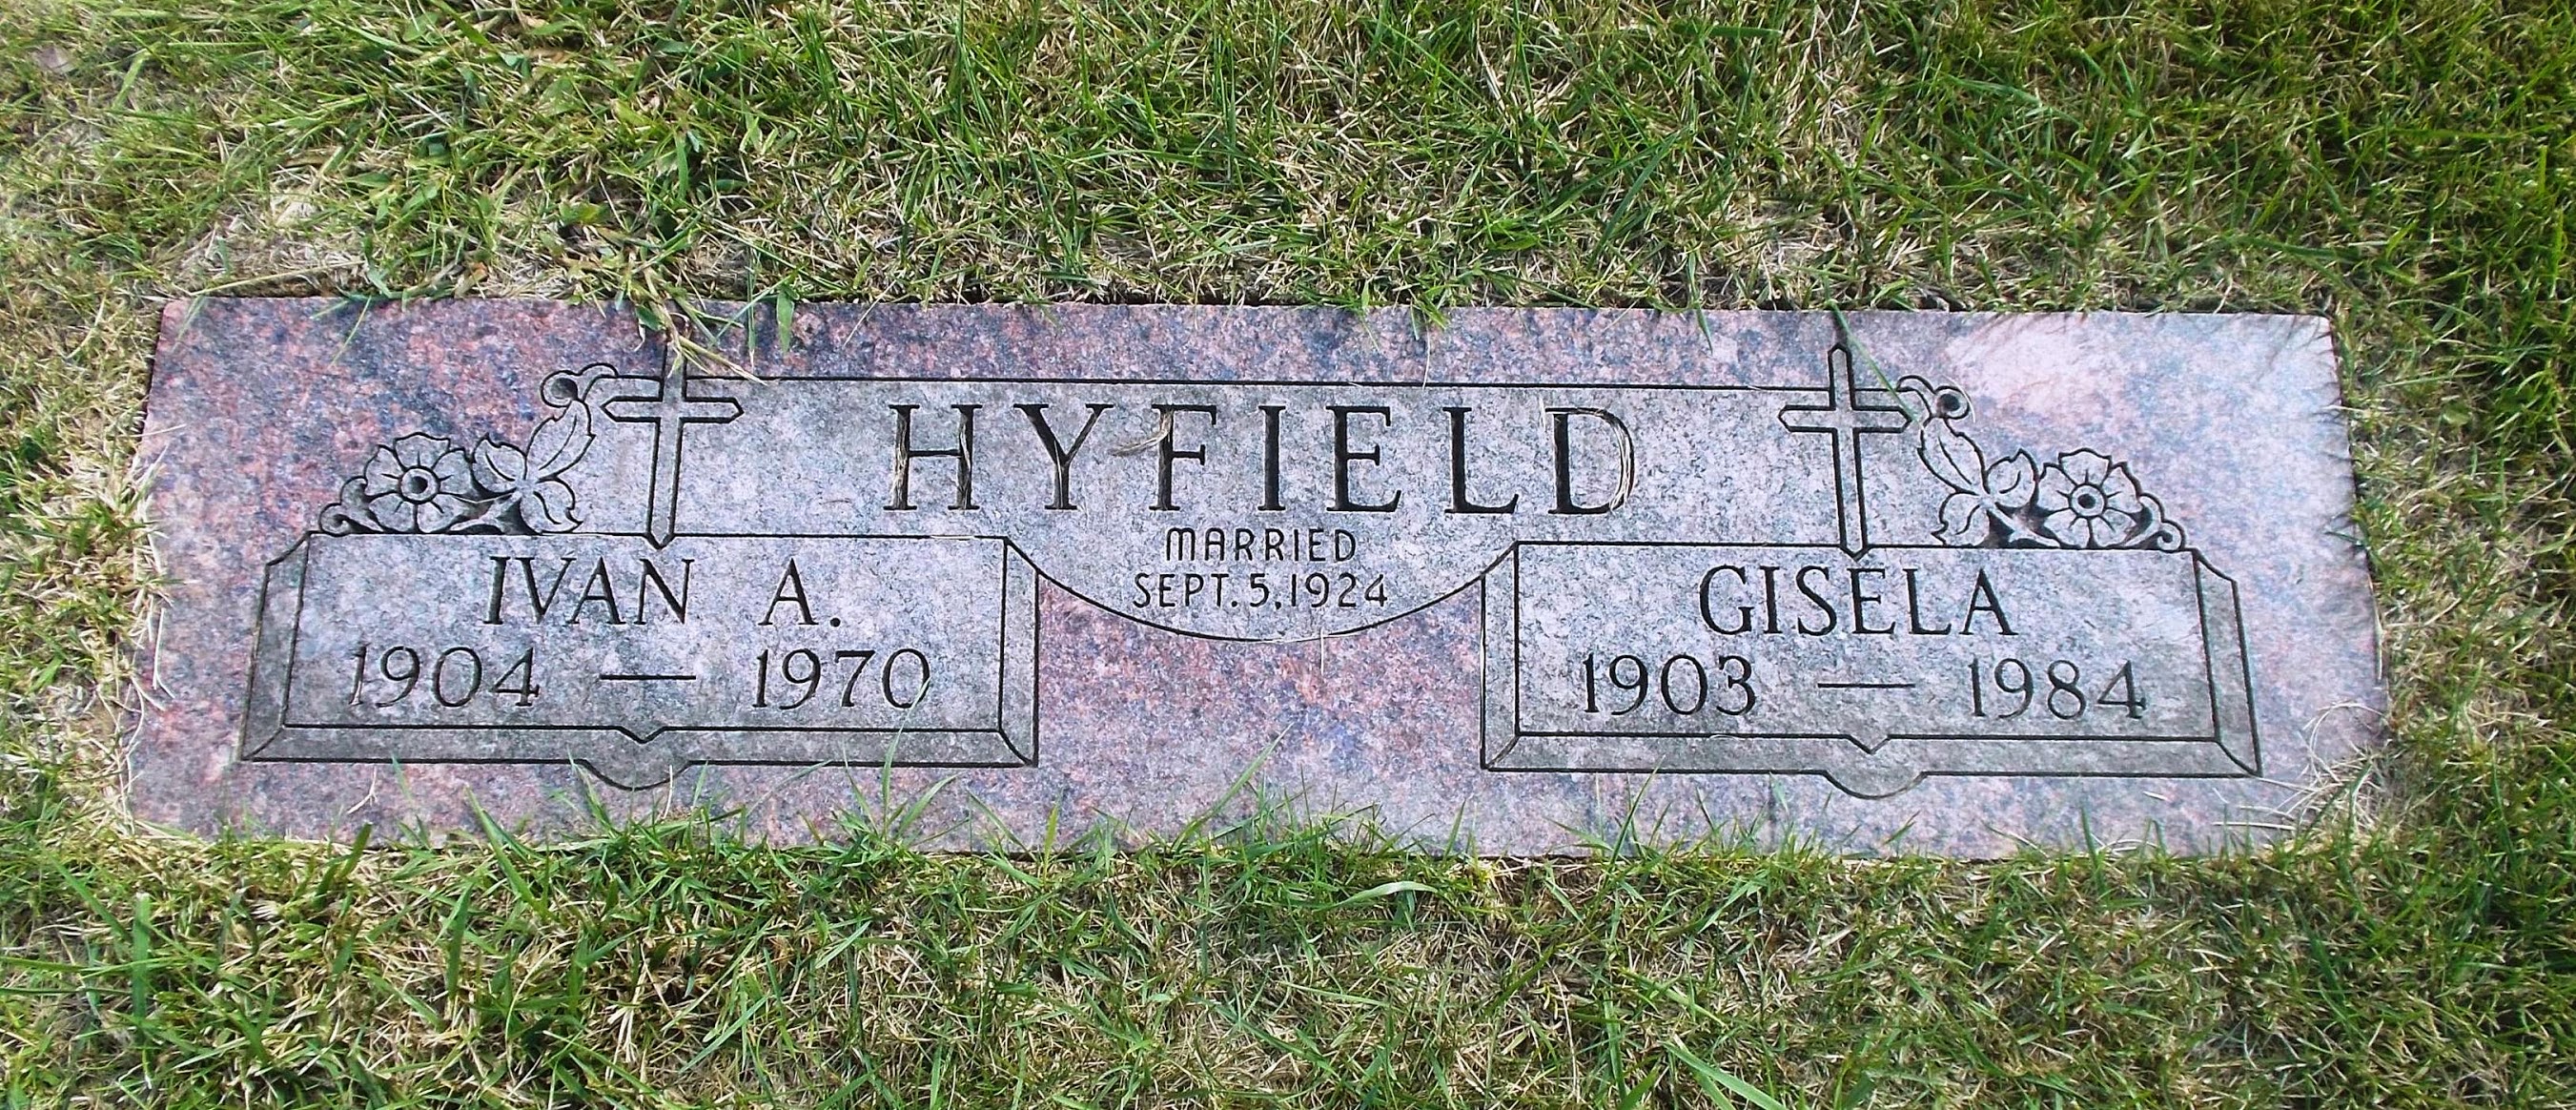 Ivan A Hyfield